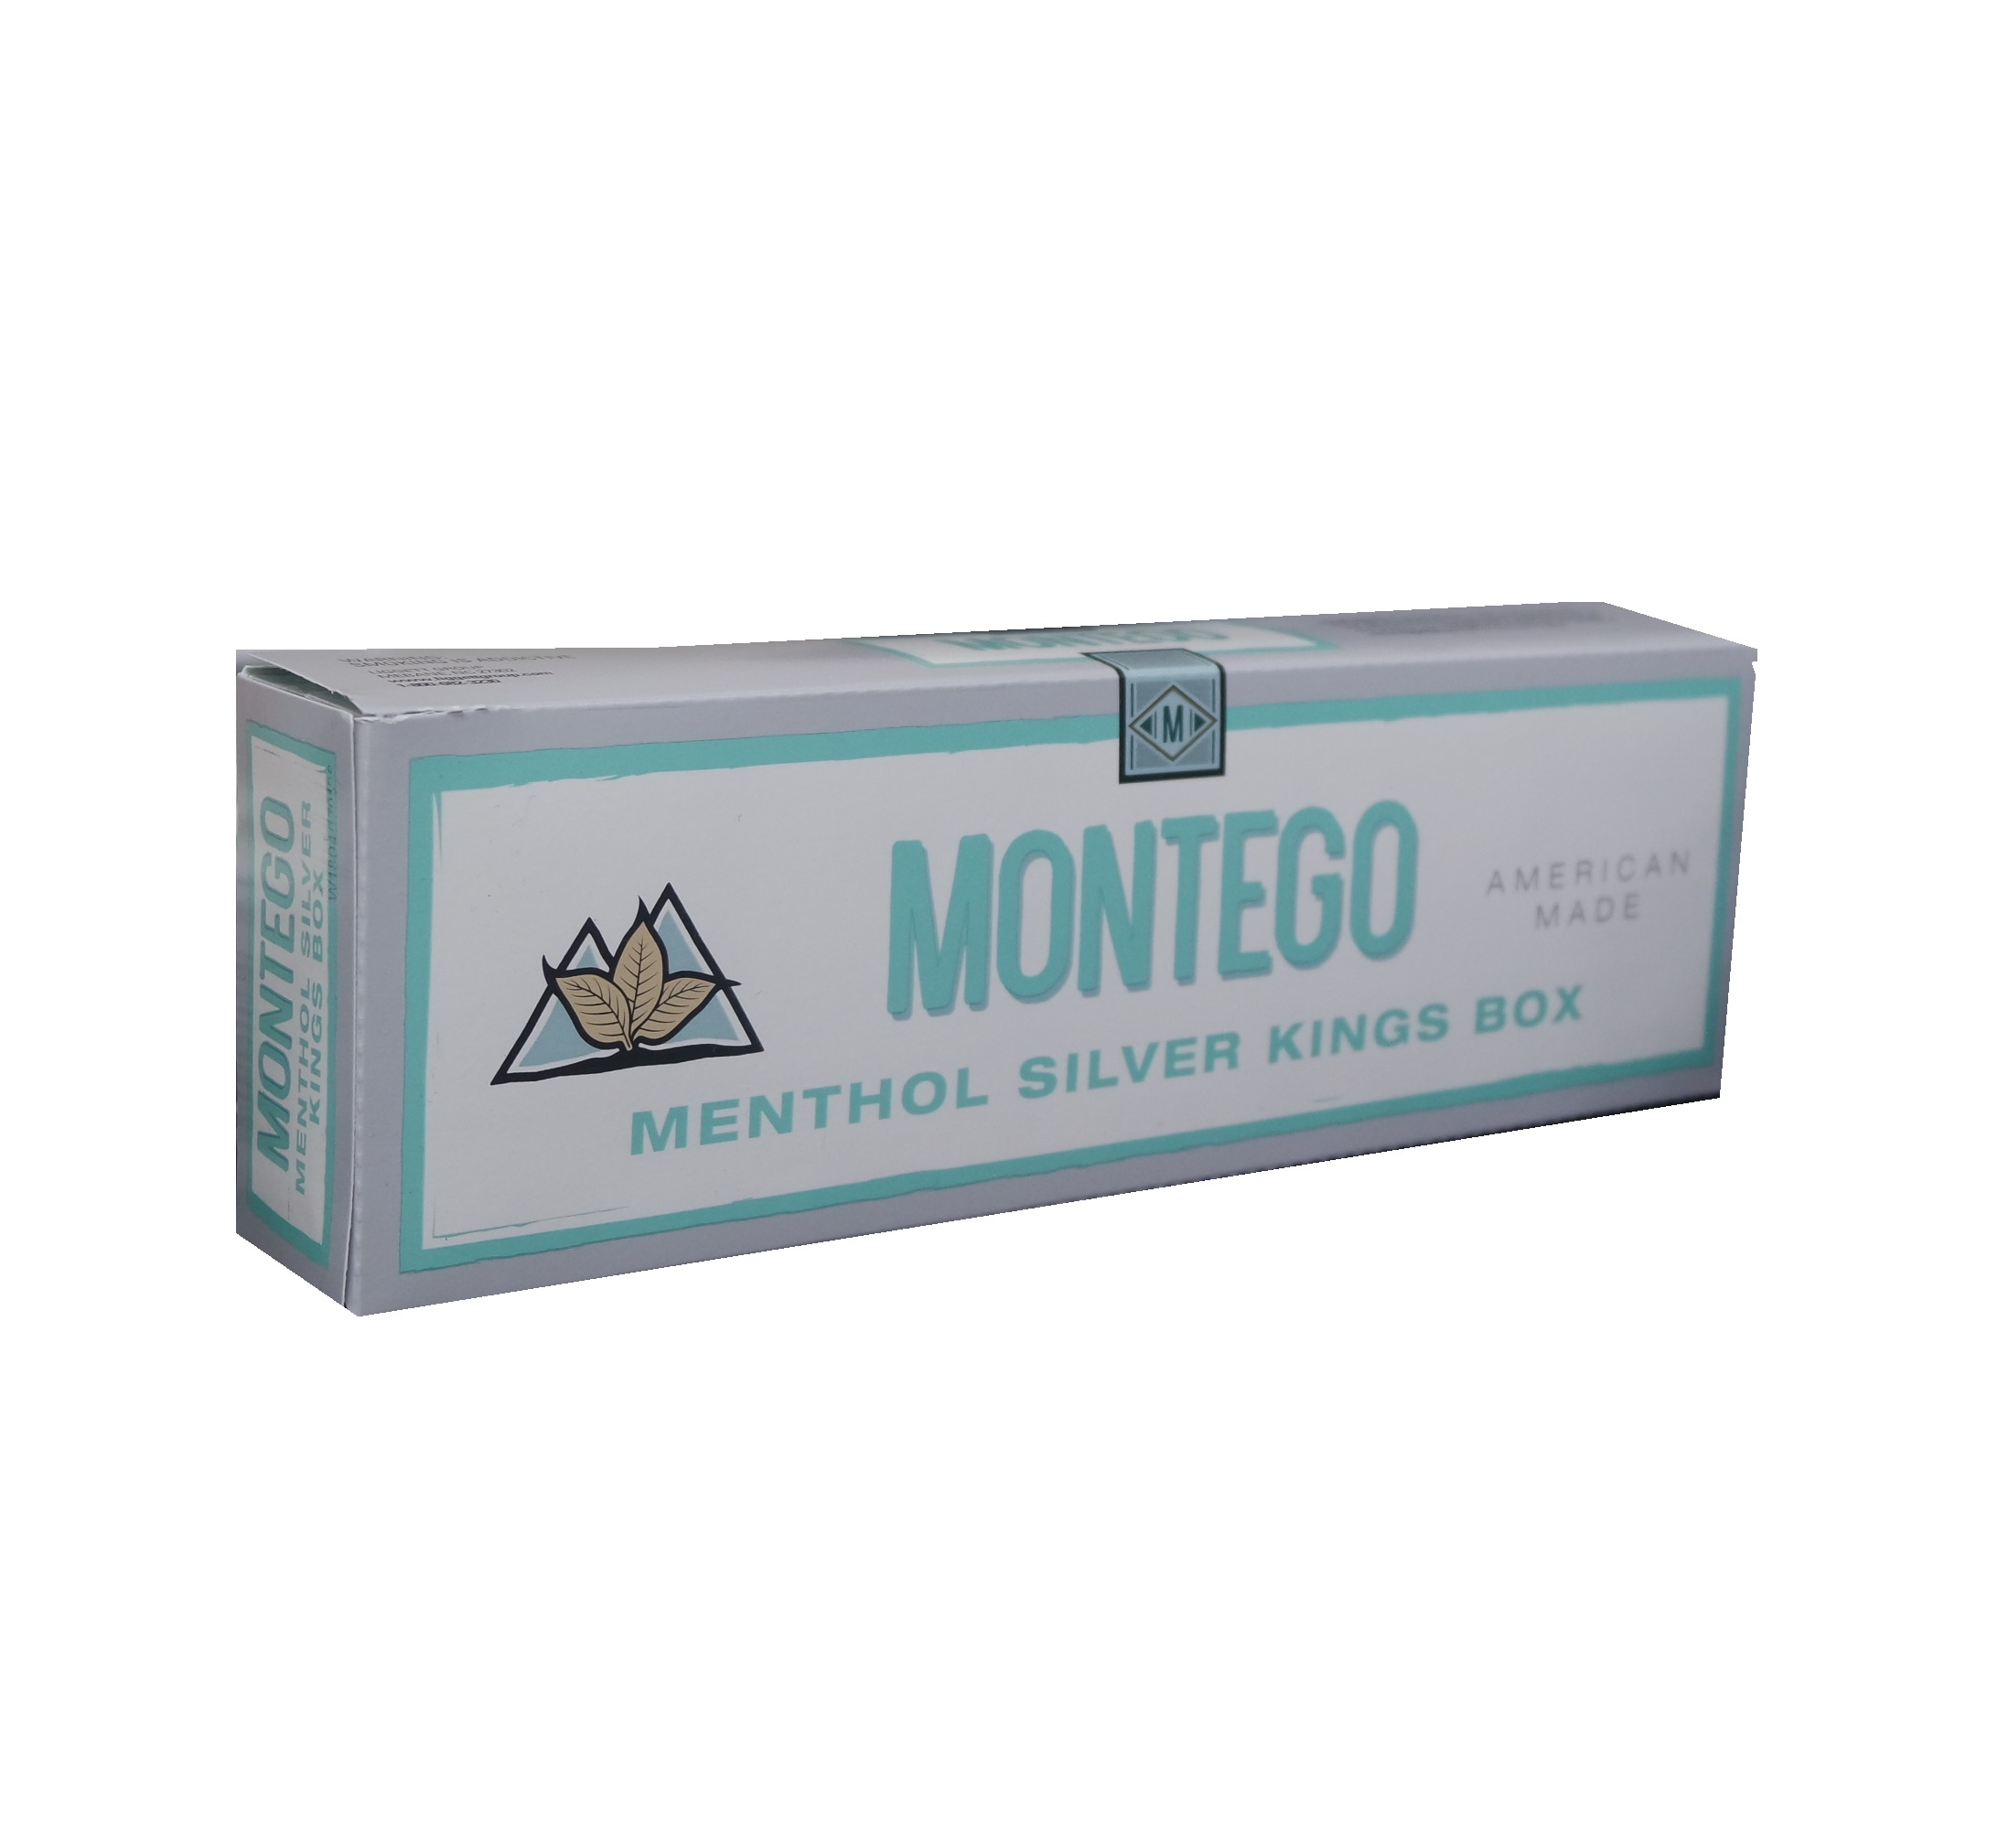 Montego menthol silver king box